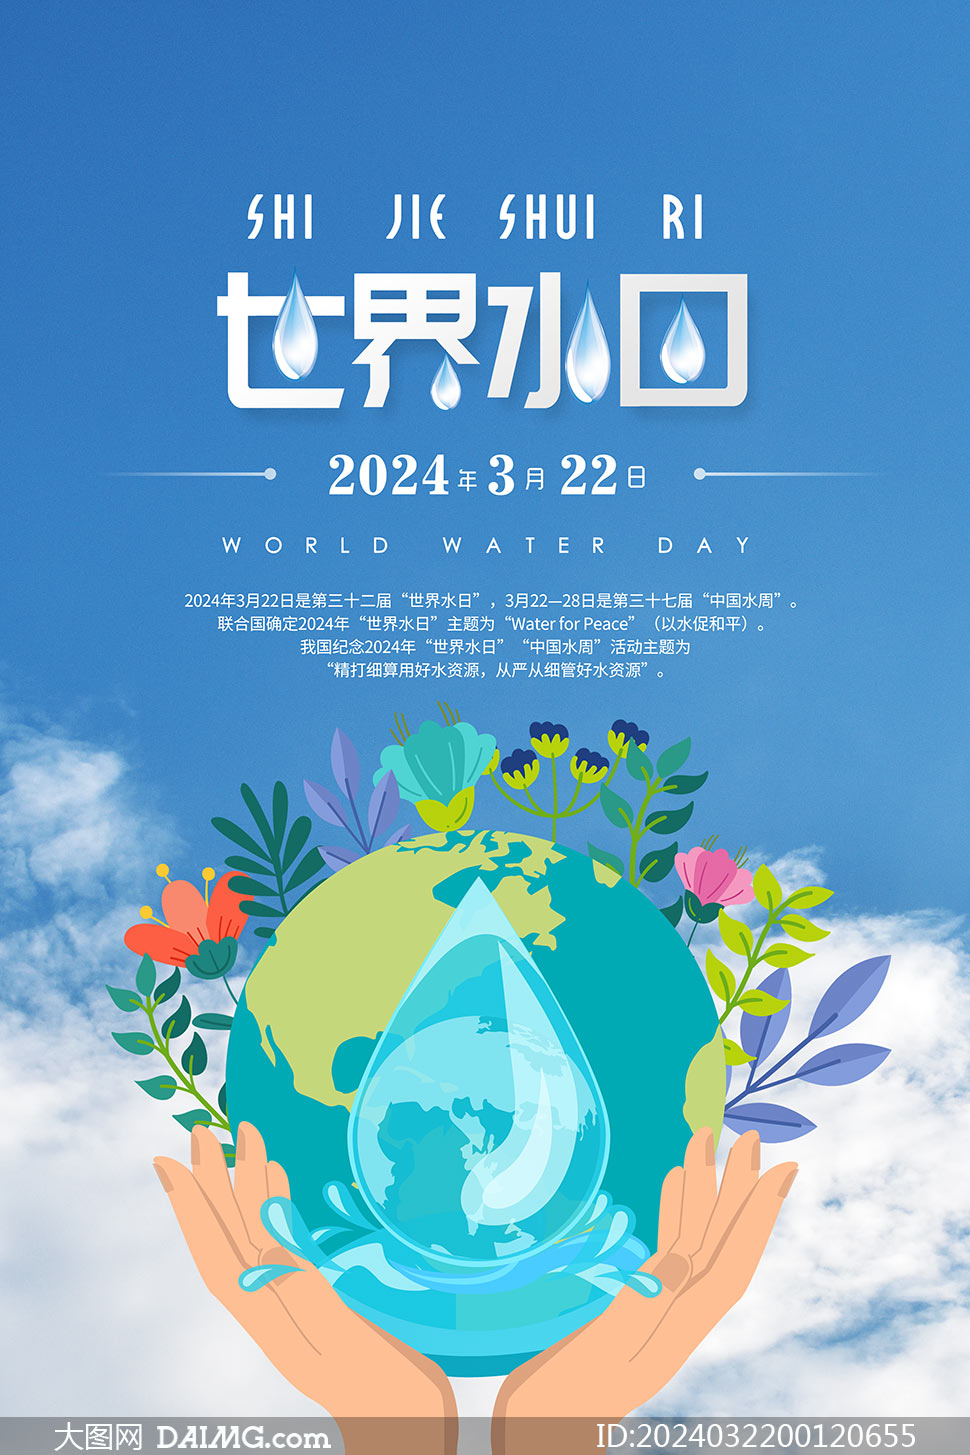 蓝色创意世界水日宣传海报psd素材